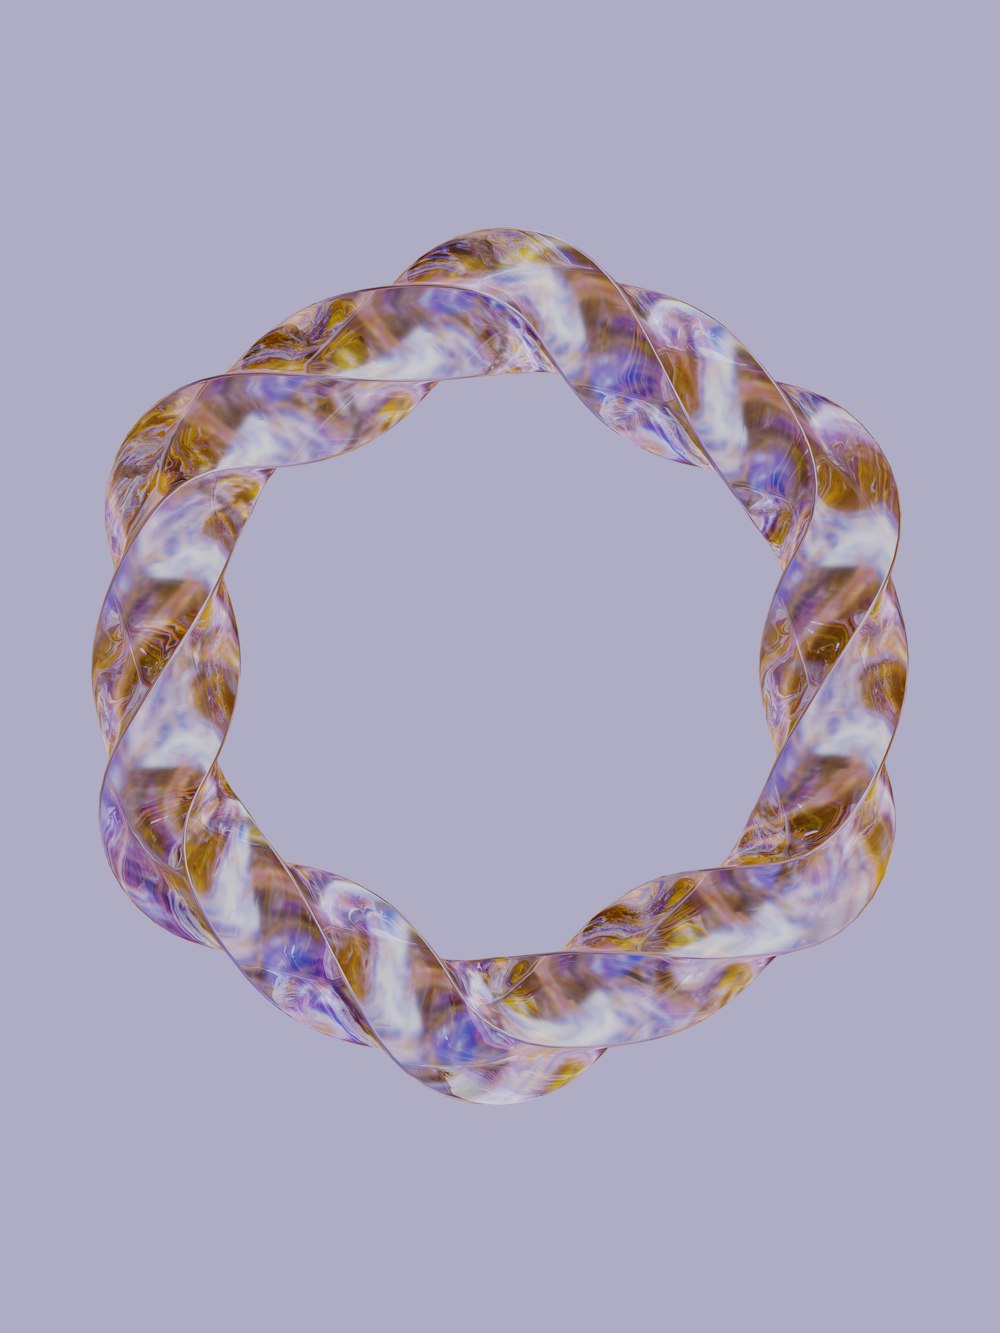 Un objeto circular con un fondo púrpura